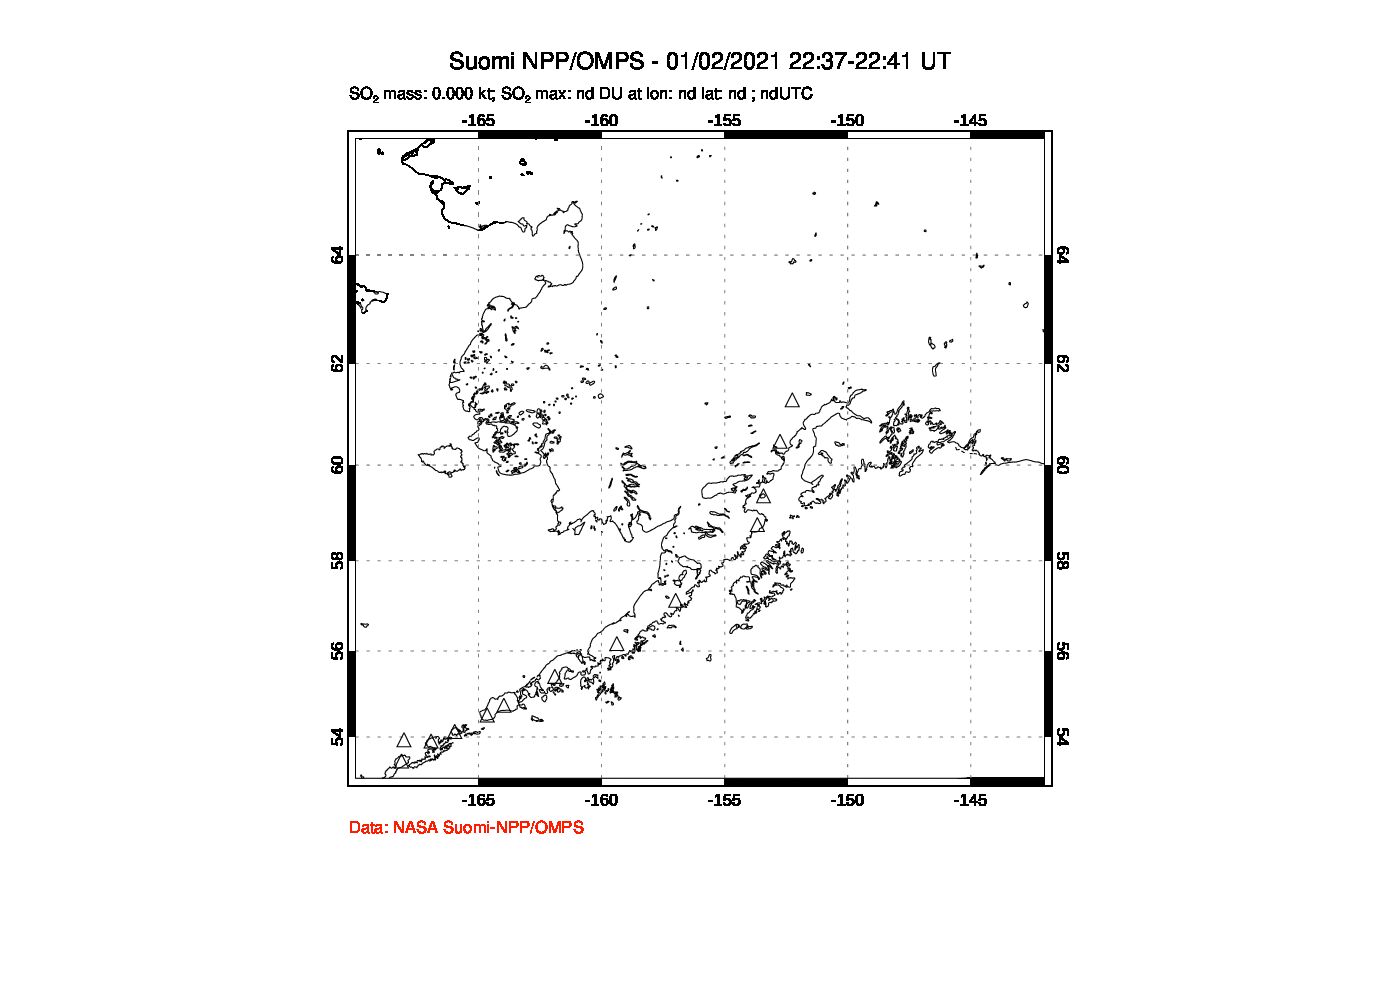 A sulfur dioxide image over Alaska, USA on Jan 02, 2021.